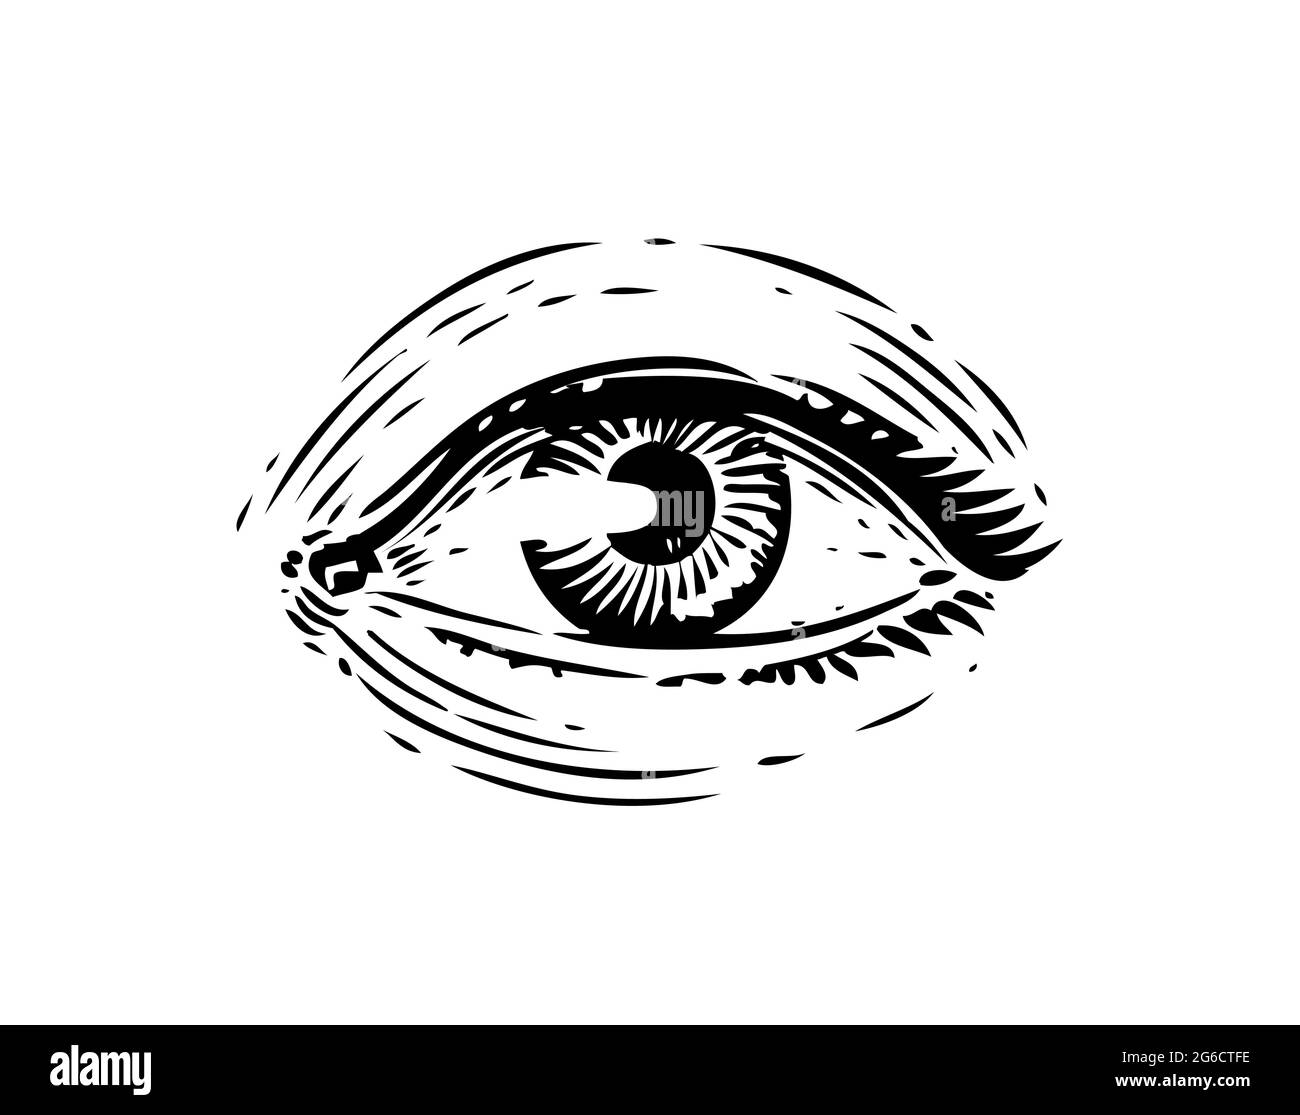 Schizzo vintage dell'occhio umano. Illustrazione disegnata a mano in stile incisione Illustrazione Vettoriale